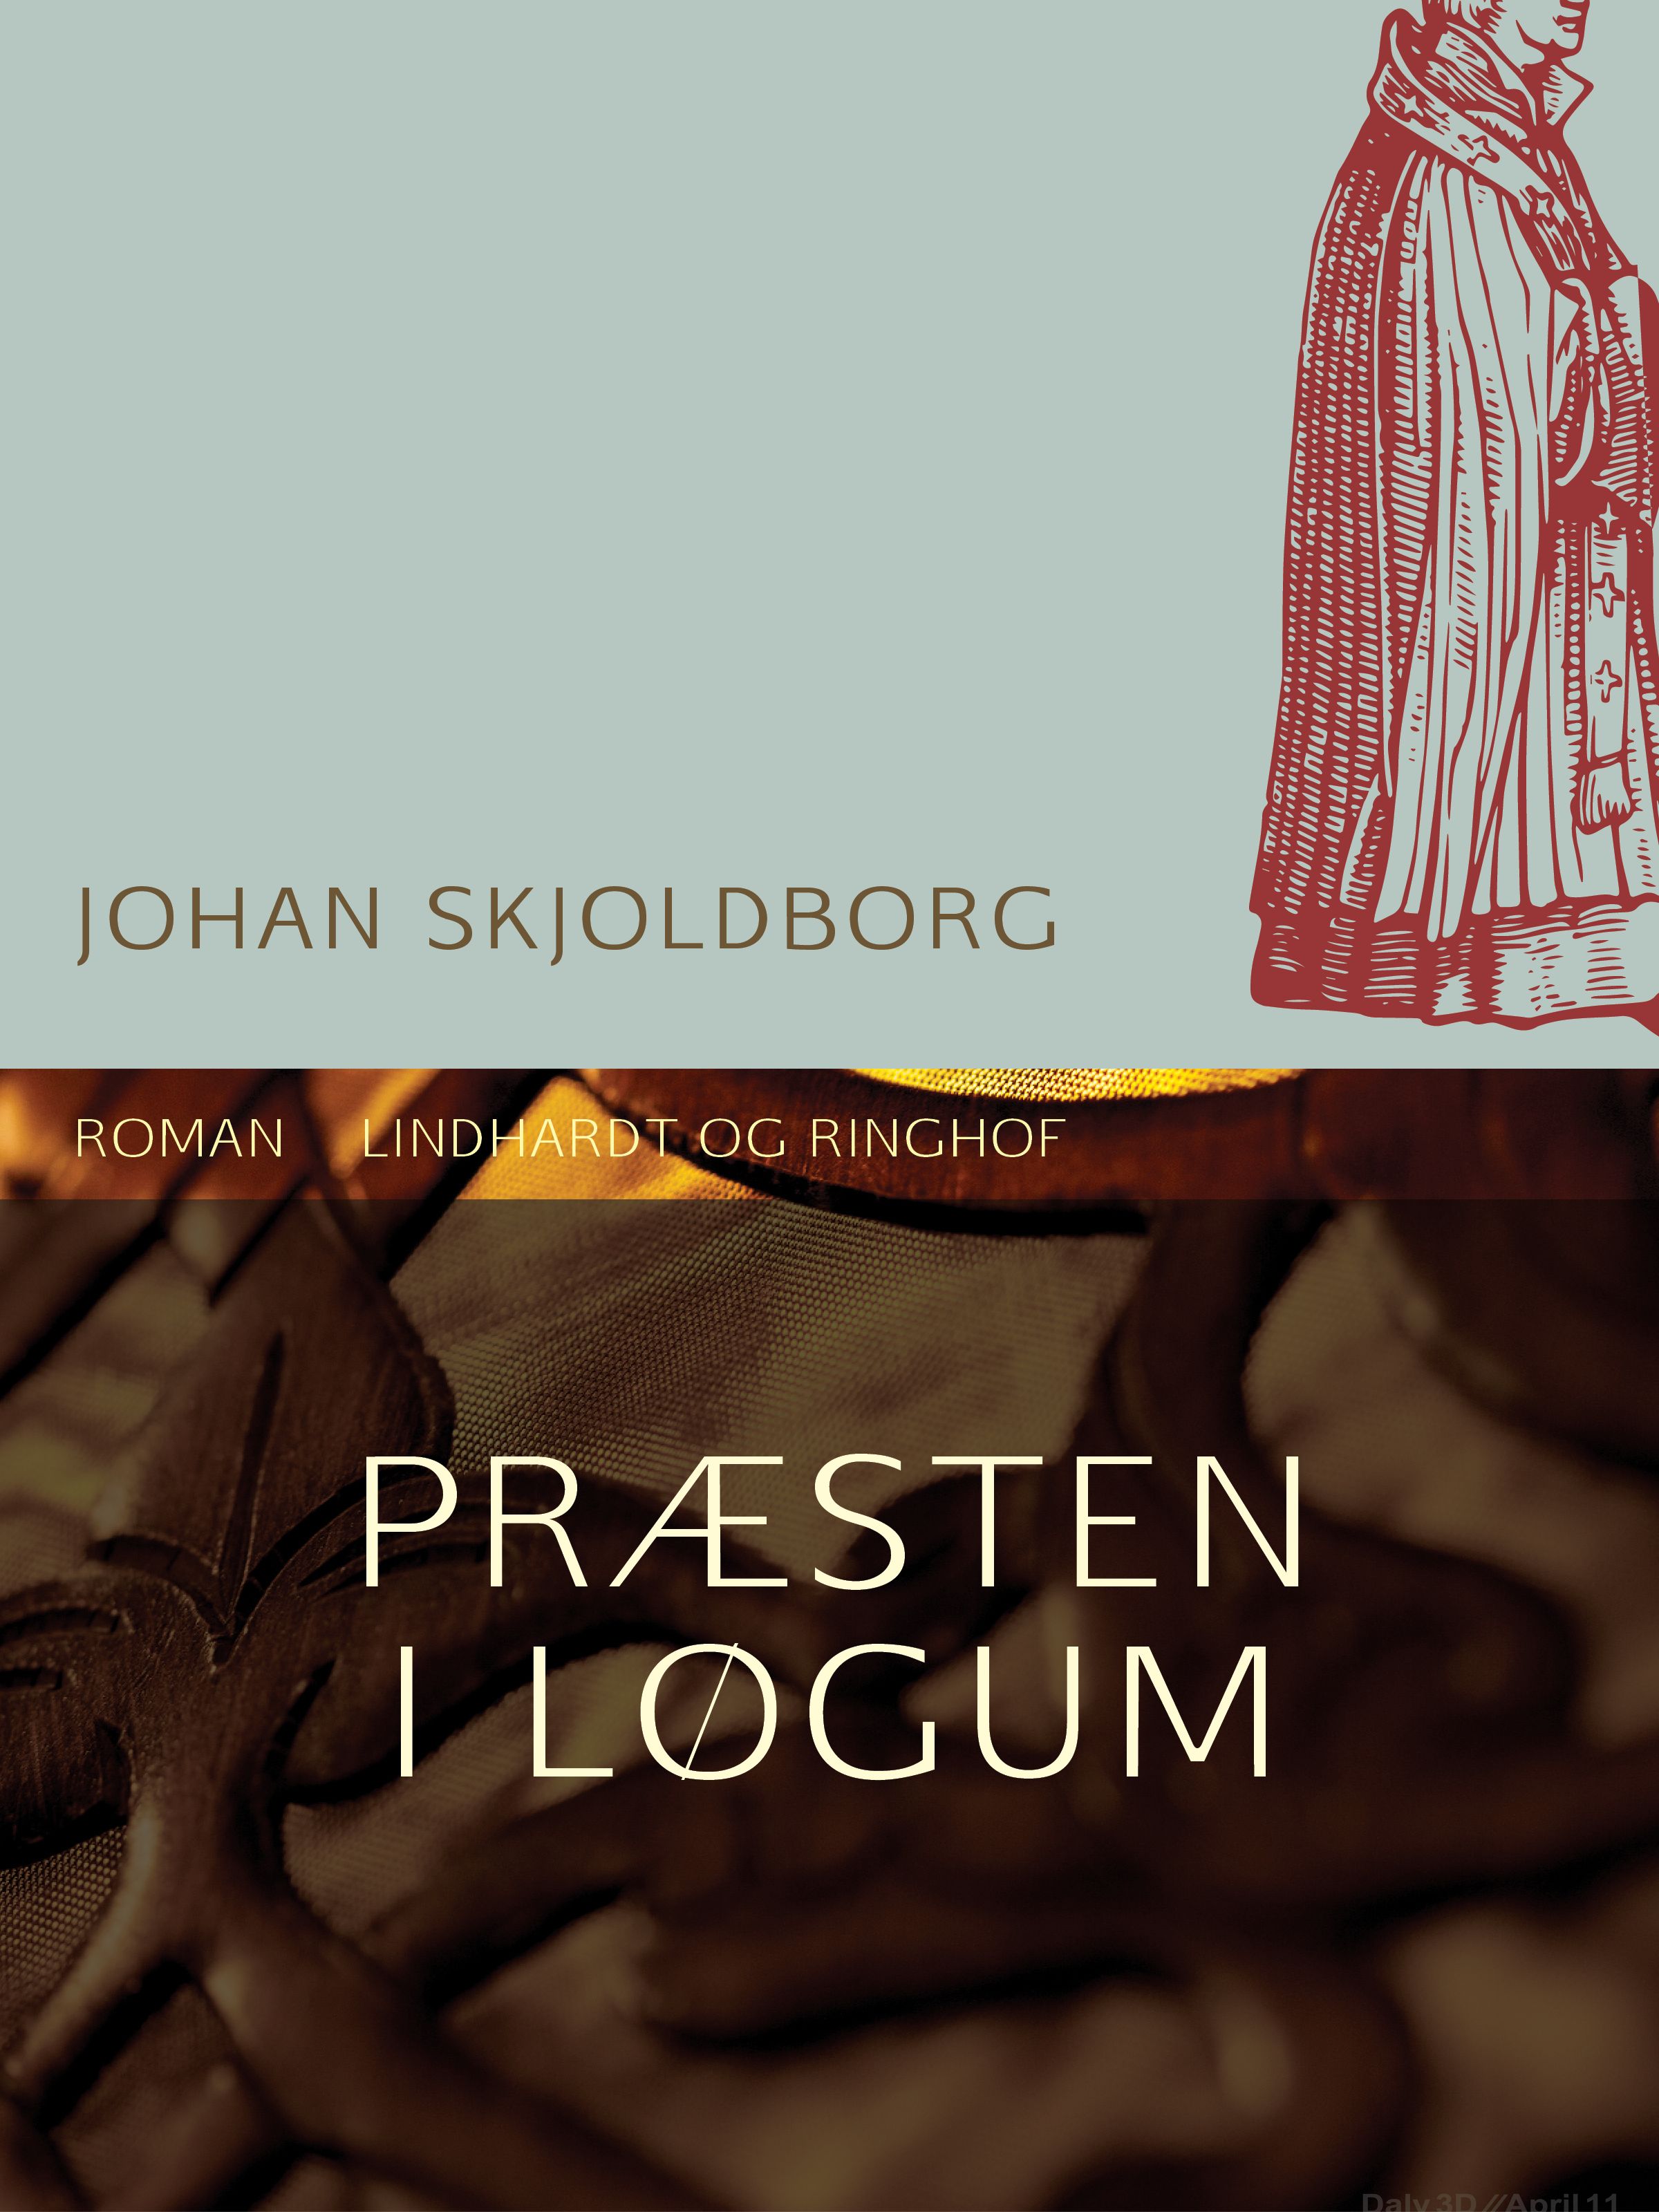 Præsten i Løgum, ljudbok av Johan Skjoldborg